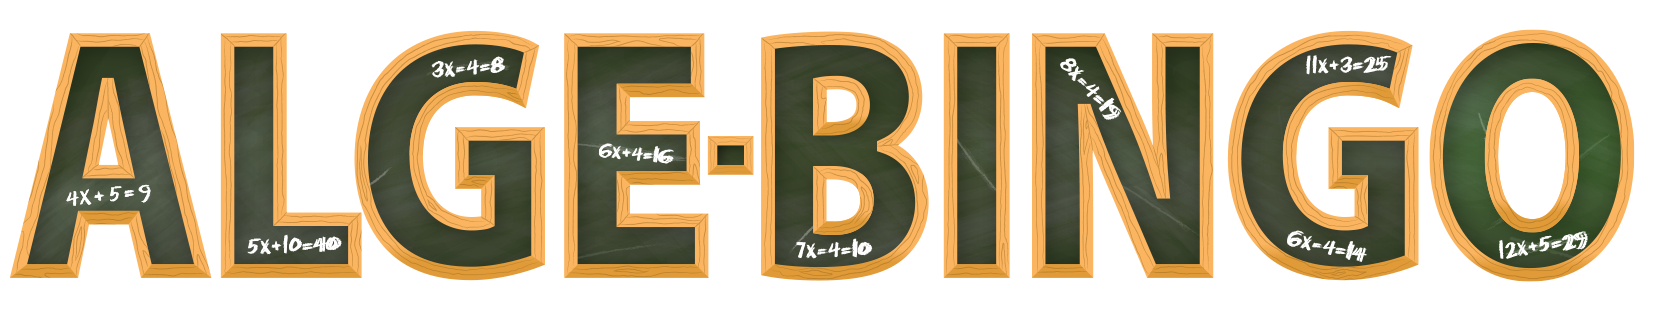 Alge-Bingo-Logo